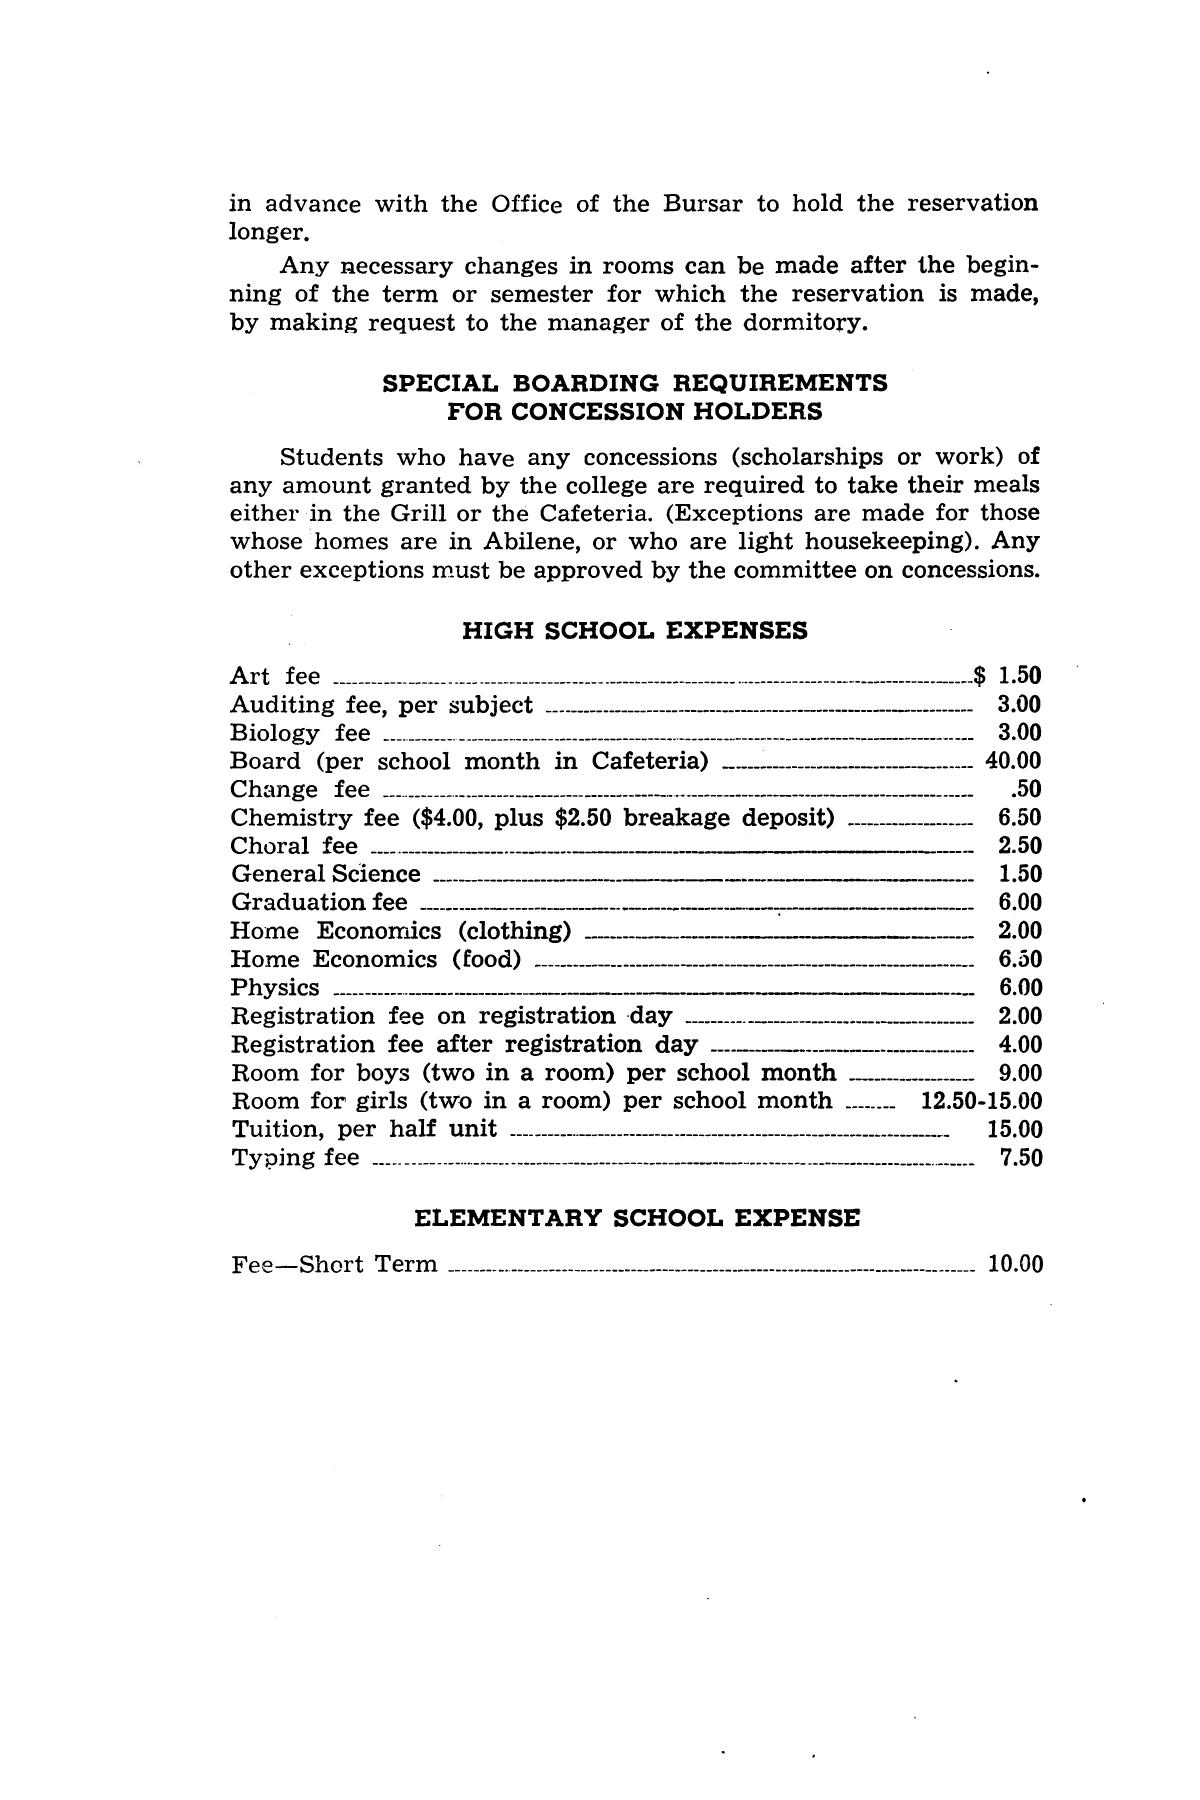 Catalog of Abilene Christian College, 1953
                                                
                                                    12
                                                